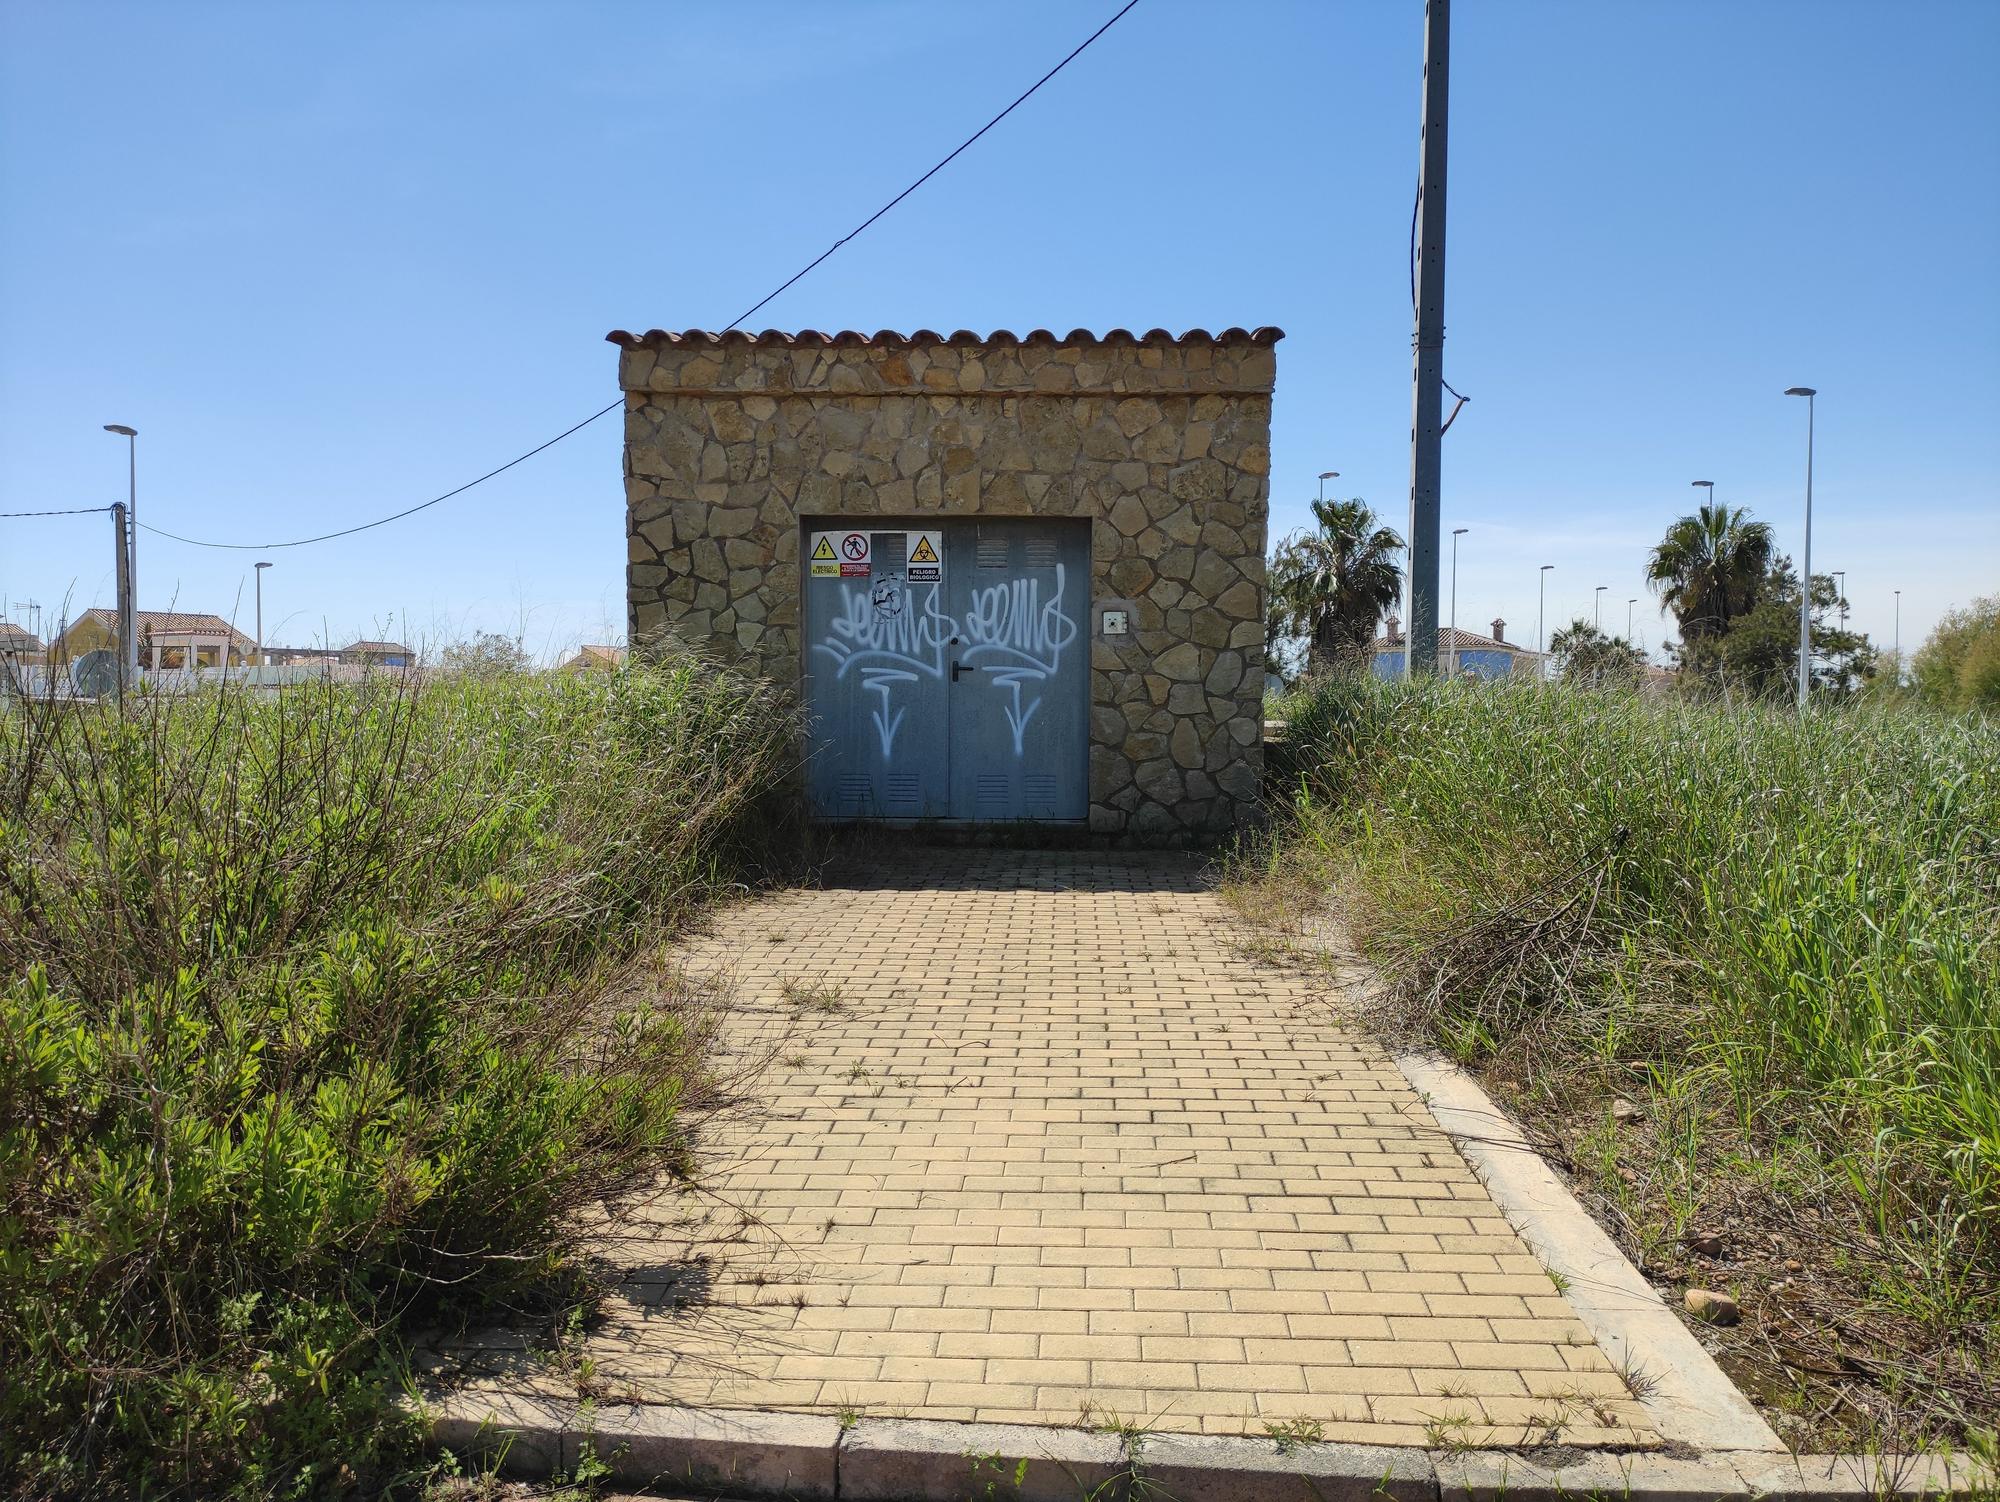 El PAI Belcaire Sur de Moncofa, una urbanización abandonada y habitada solo por la maleza